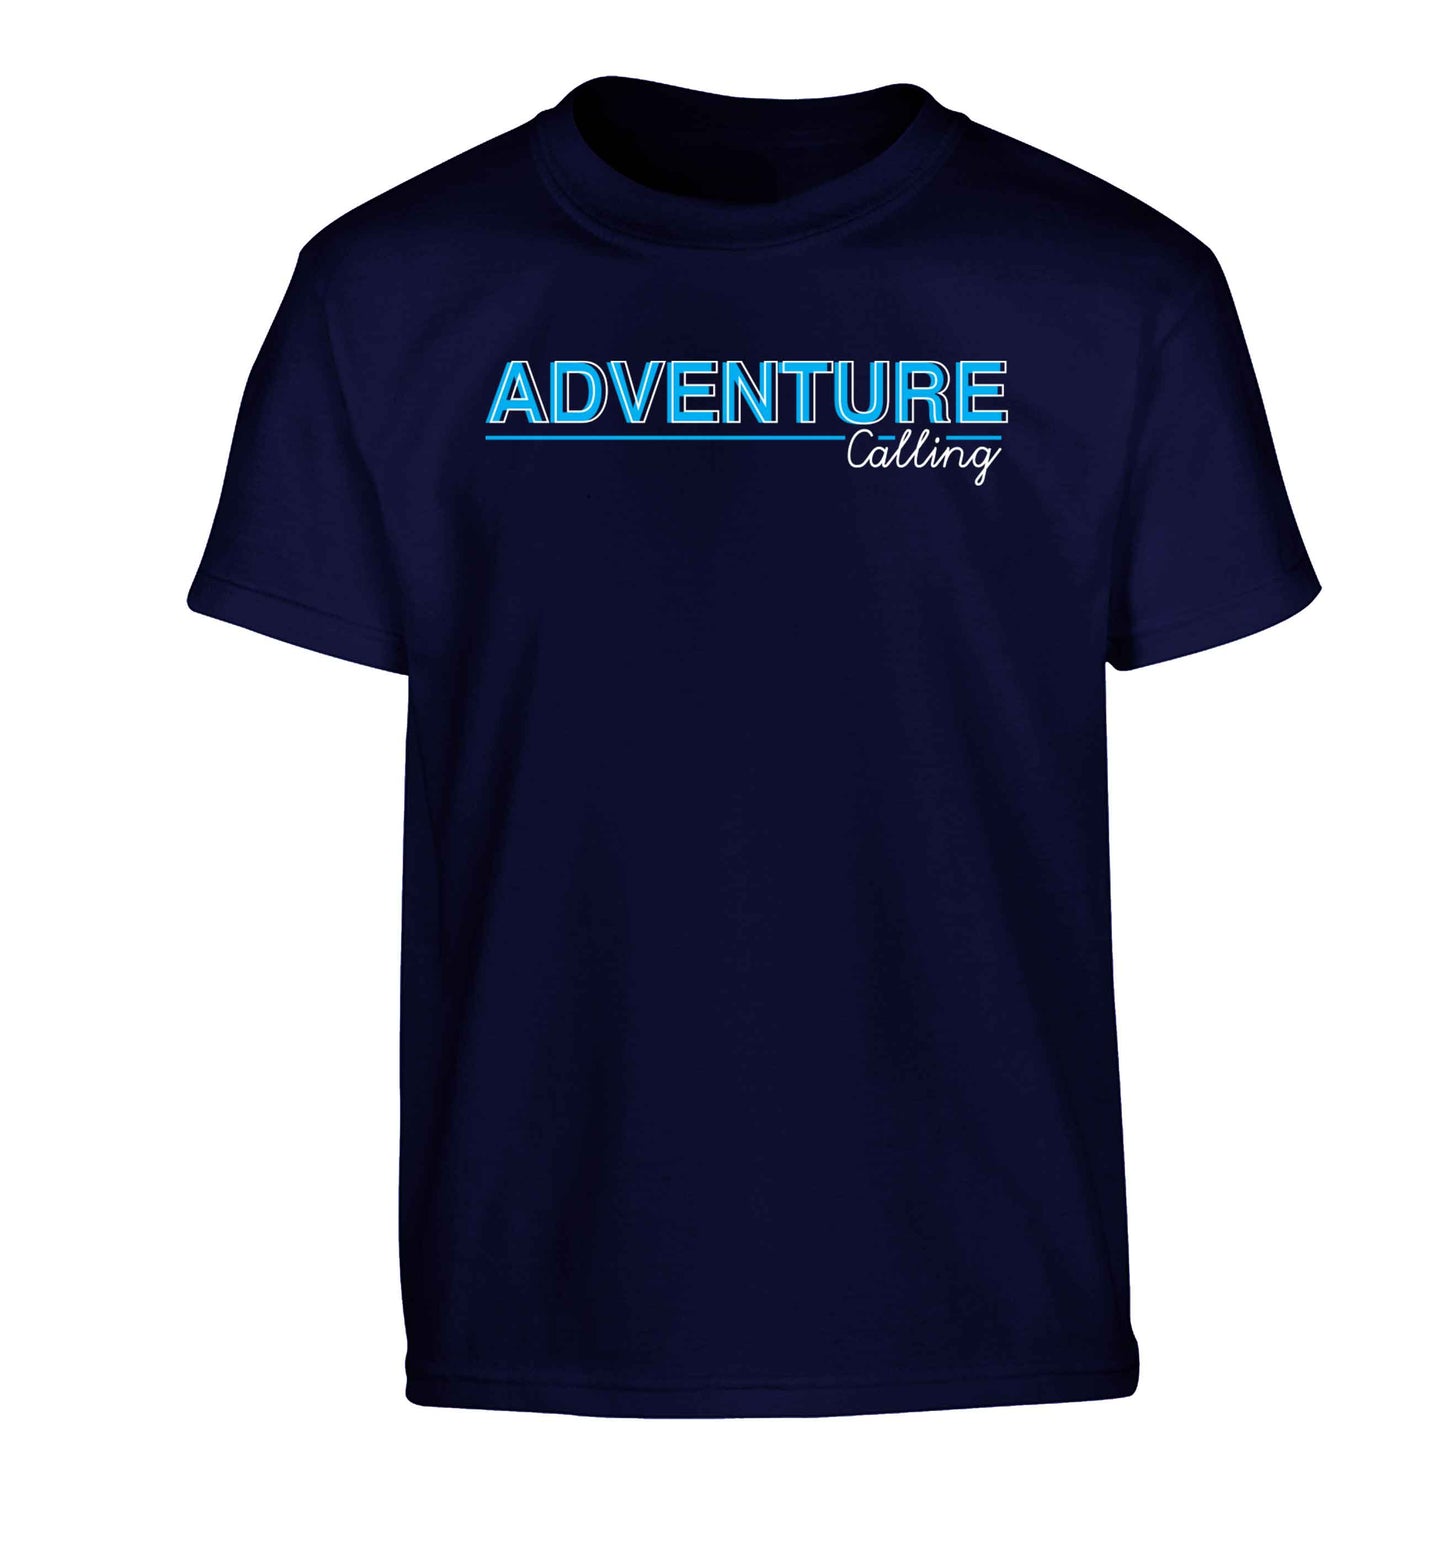 Adventure calling Children's navy Tshirt 12-13 Years